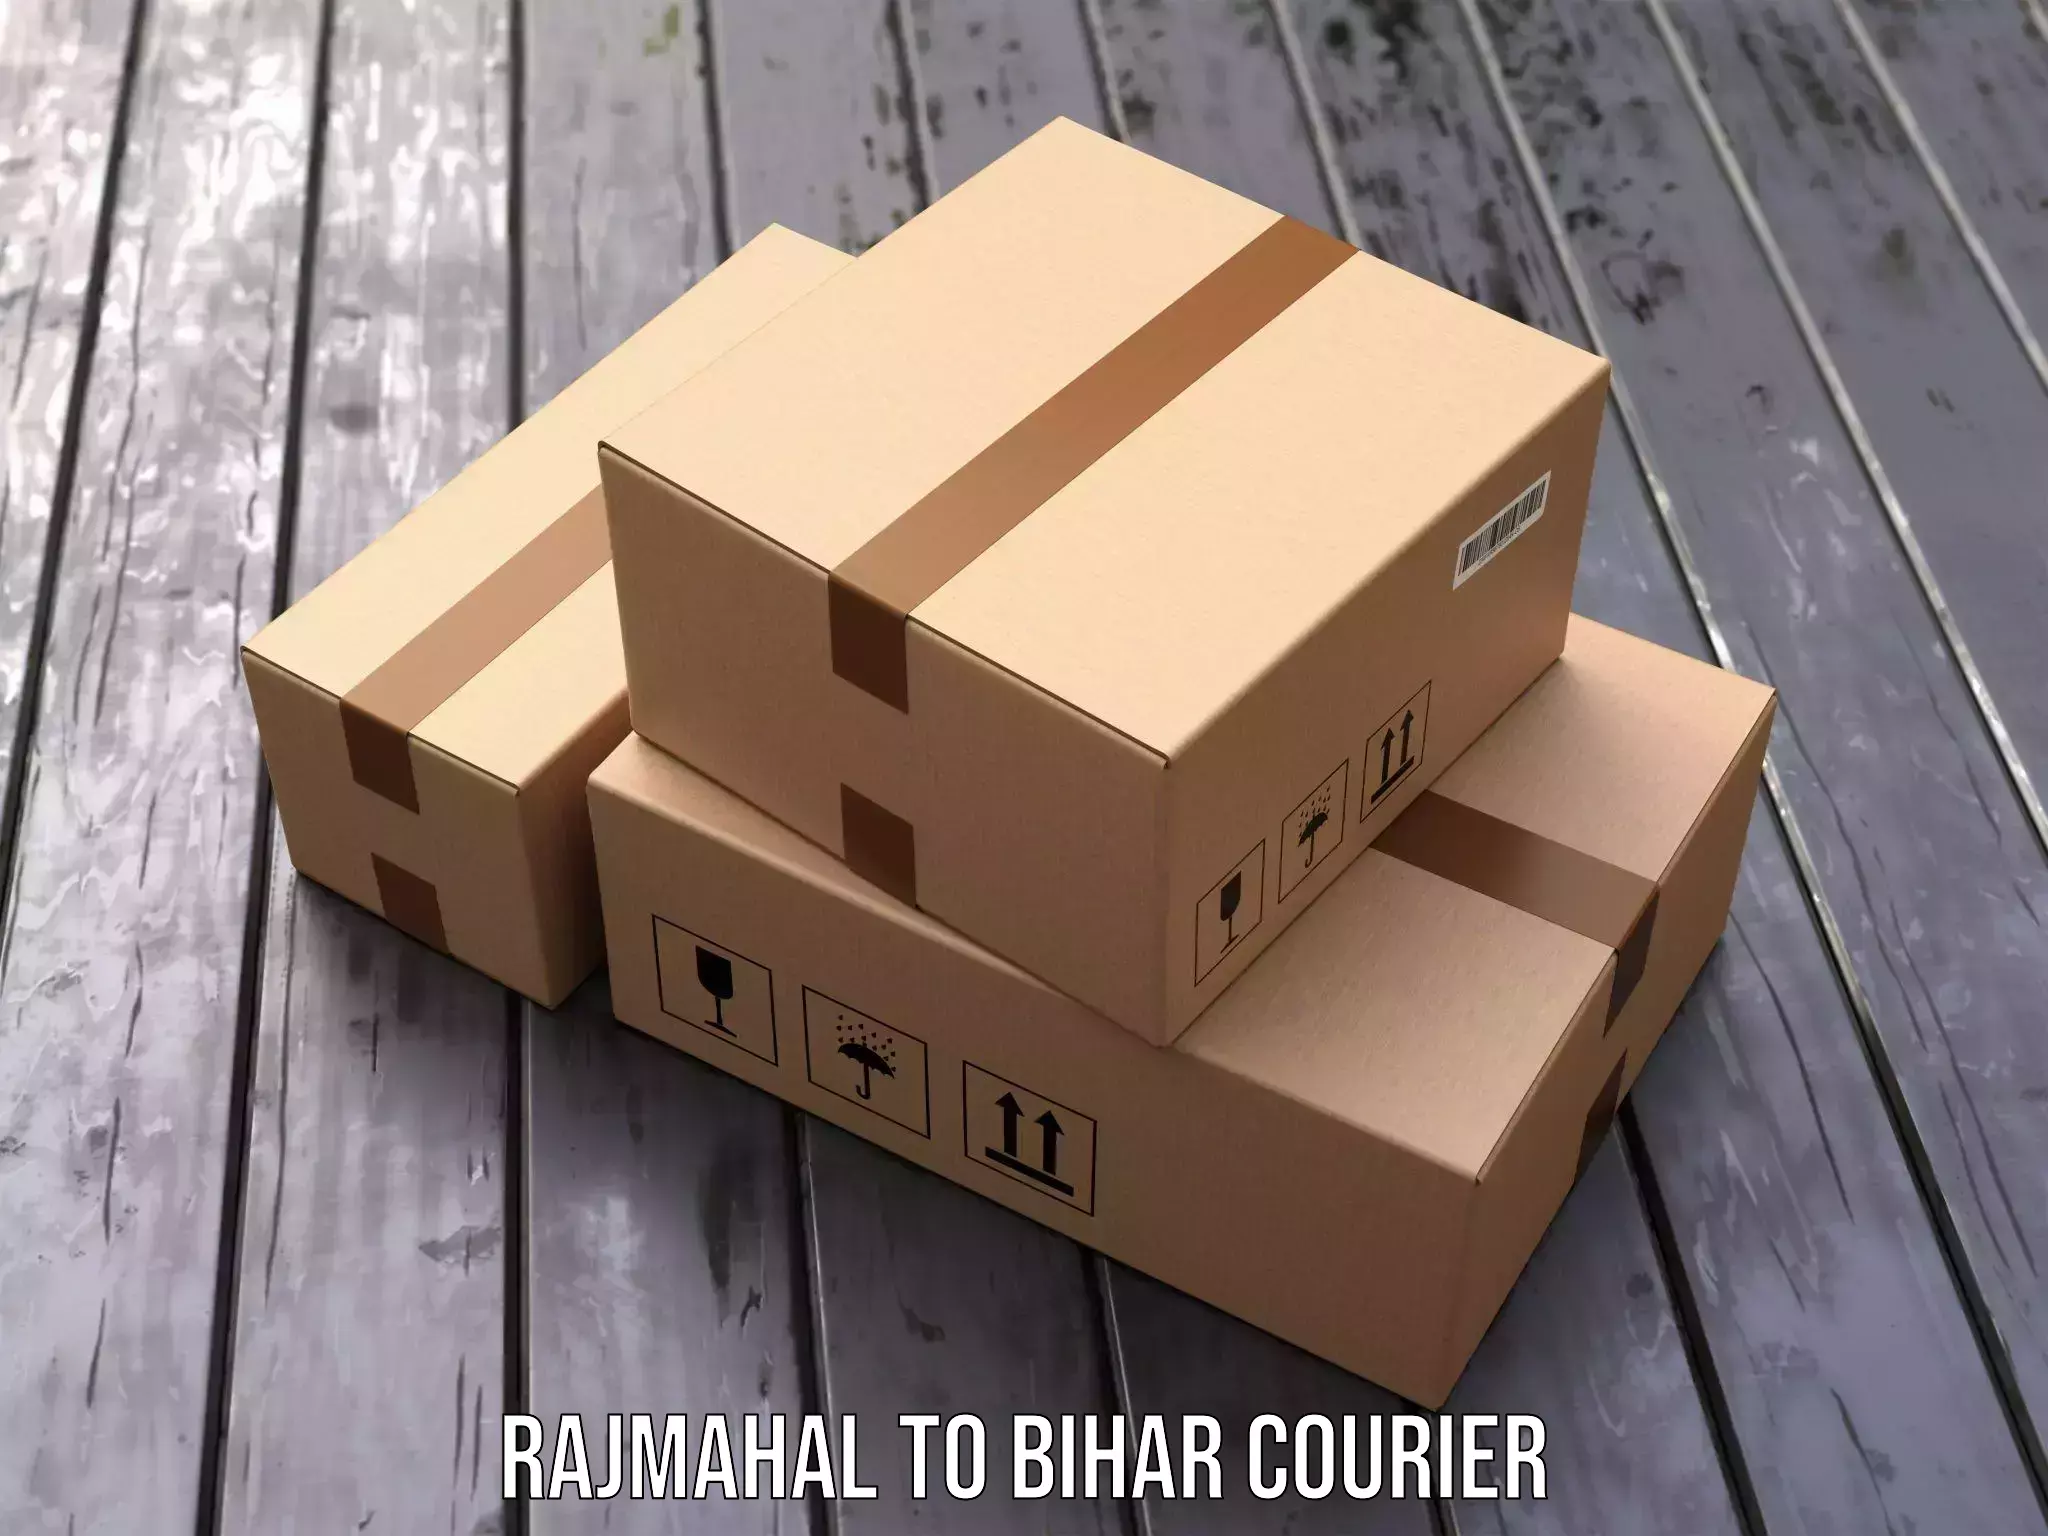 Efficient cargo services Rajmahal to Bihar